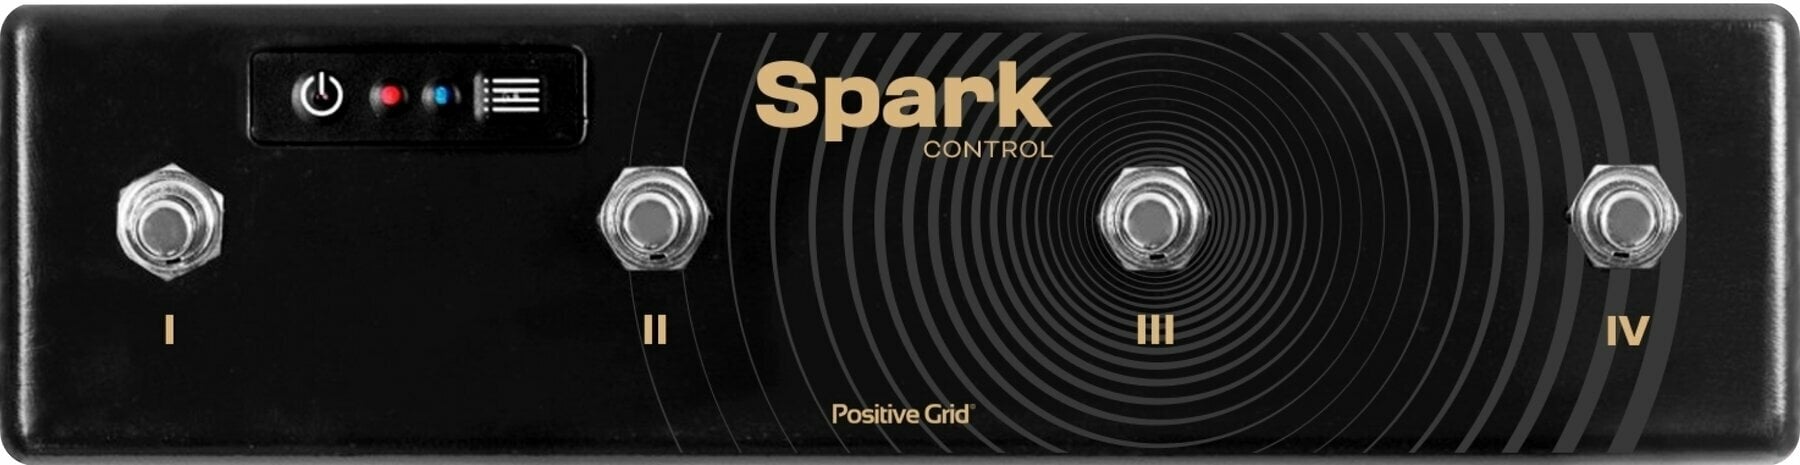 Többcsatornás Positive Grid Spark Control Többcsatornás